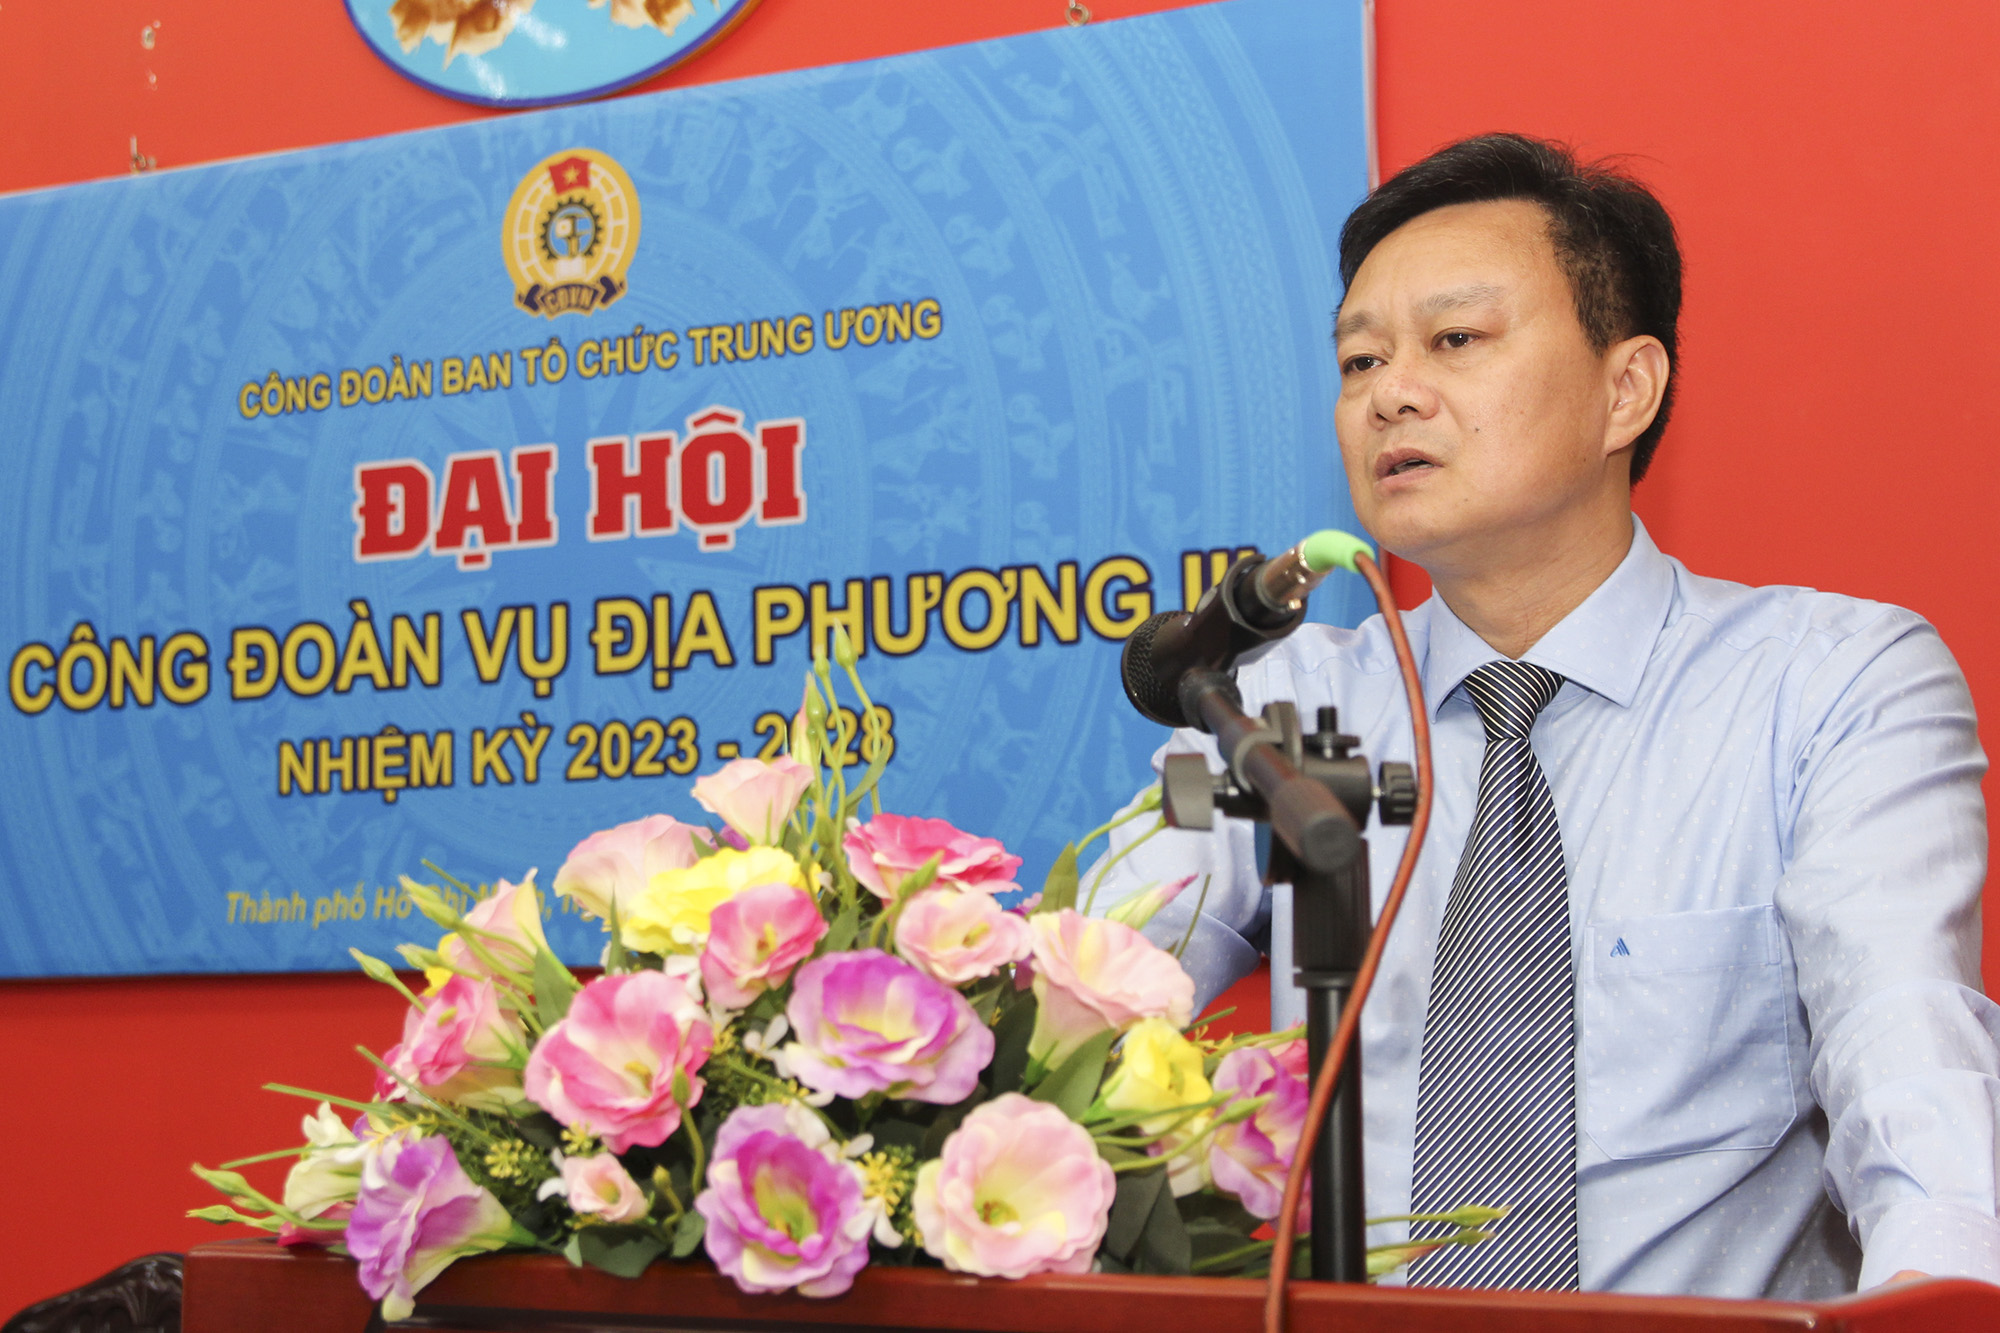 Đồng chí Nguyễn Văn Phóng, Bí thư Chi bộ, Vụ Trưởng Vụ Địa phương III phát biểu chỉ đạo Đại hội (Ảnh: H.Hào).